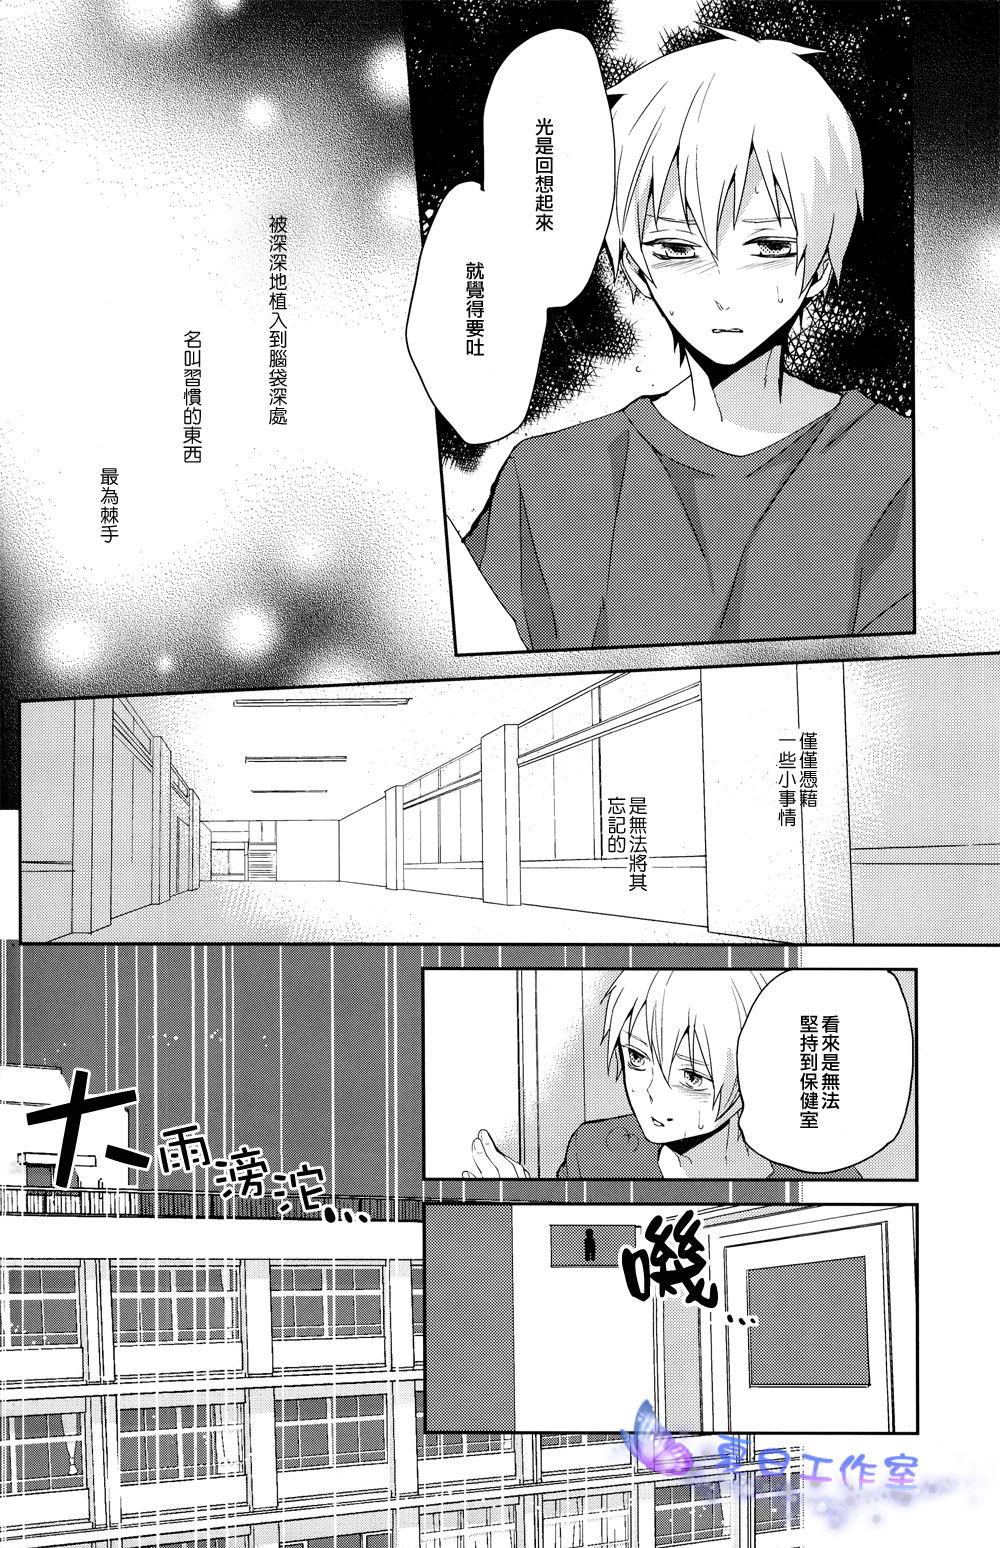 Legs Kago no Naka no - Kuroko no basuke Comedor - Page 11